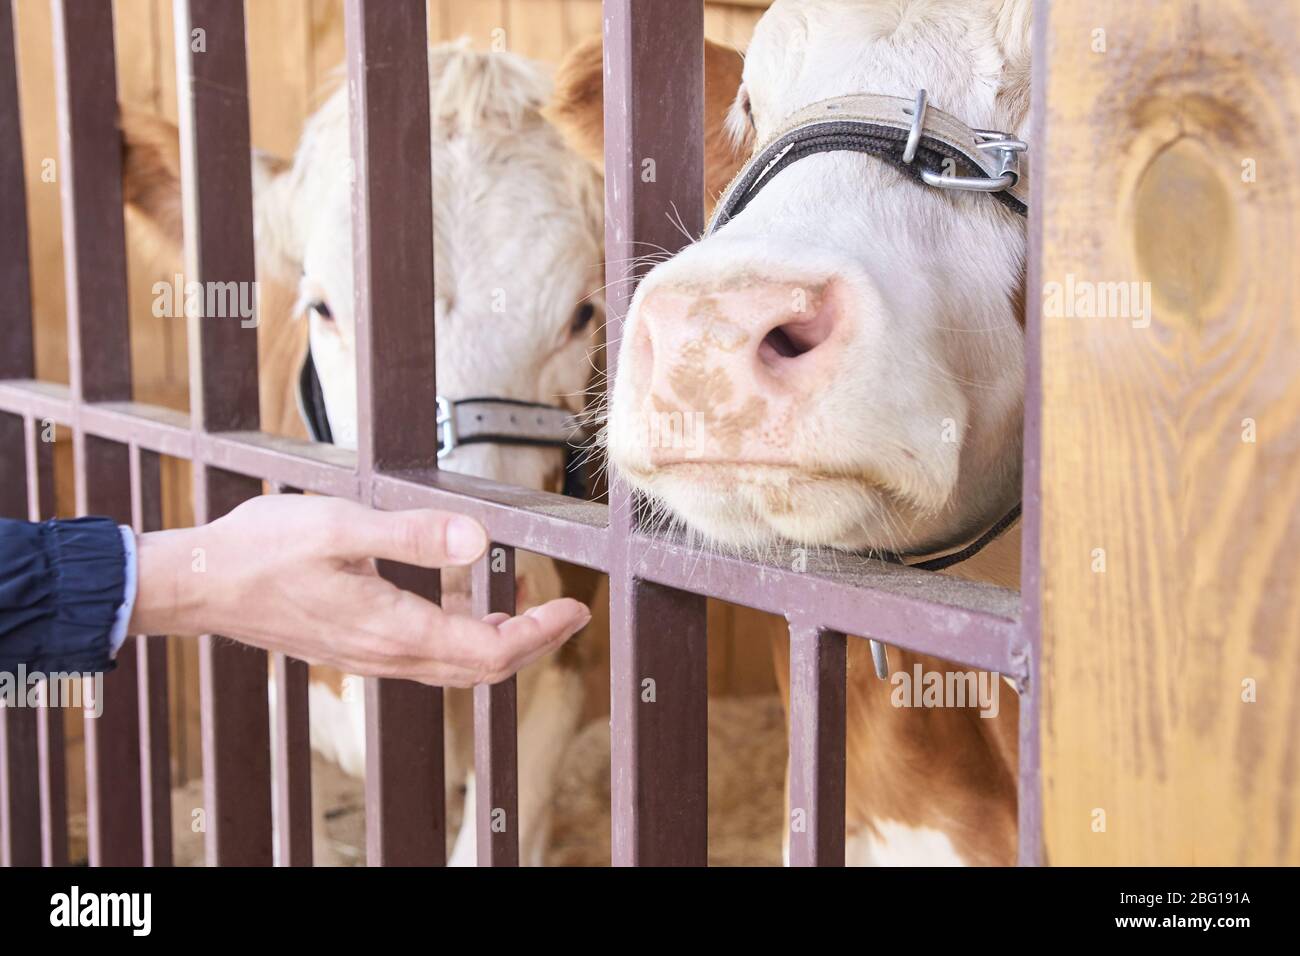 Agricultura animal enfermo. Retrato de vaca, carne de vacuno. Leche kine Foto de stock